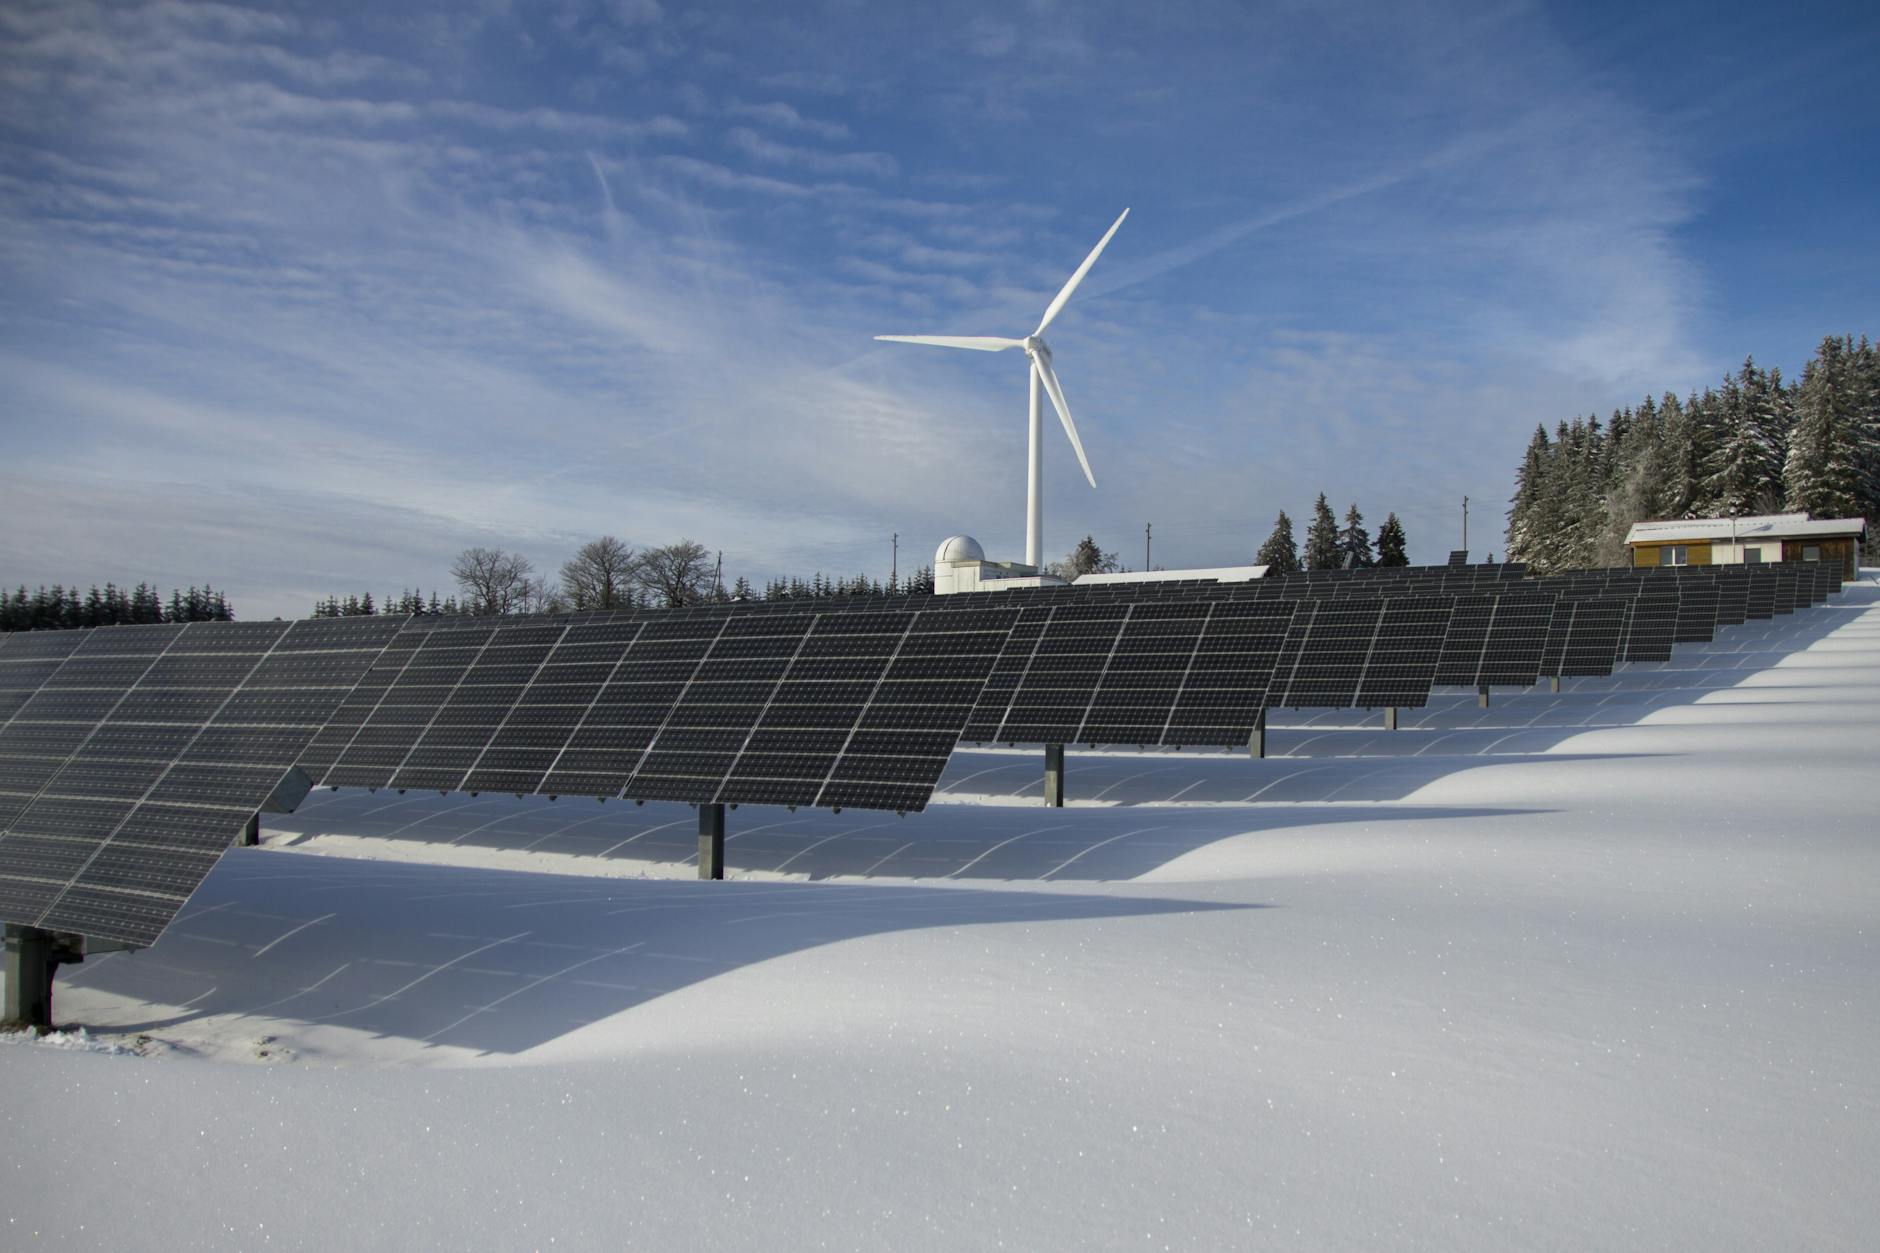 panneaux solaires sur la neige avec moulin à vent sous ciel clair